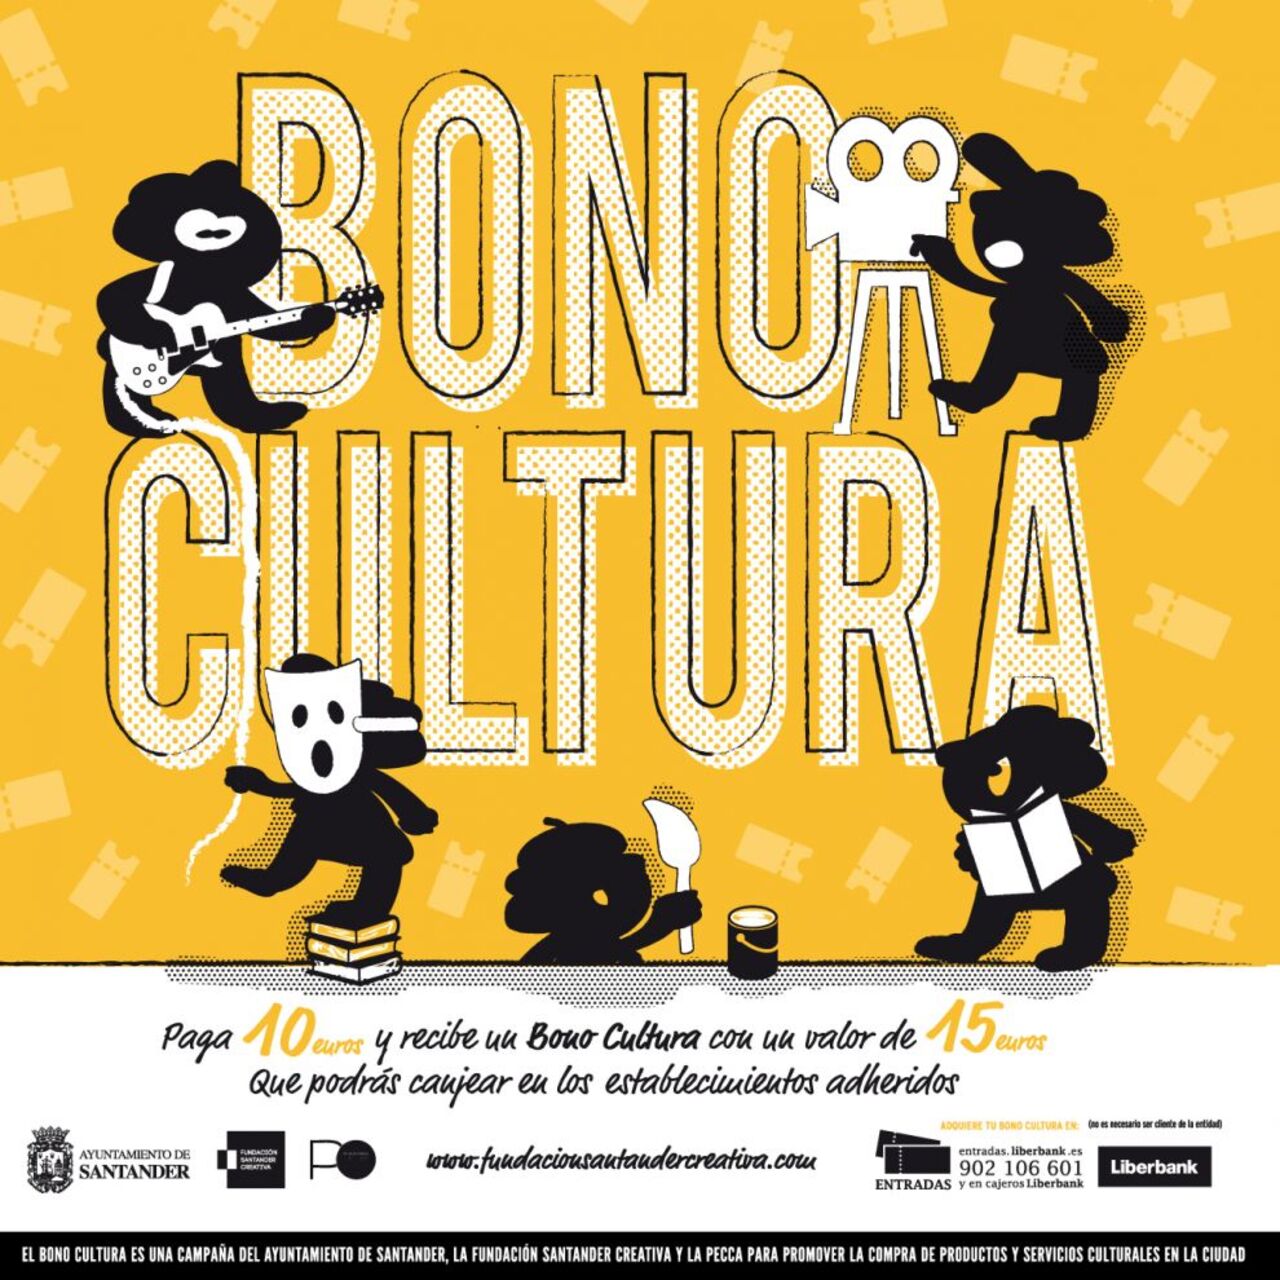 La segunda edición de la campaña "Bono Cultura" dará comienzo en marzo